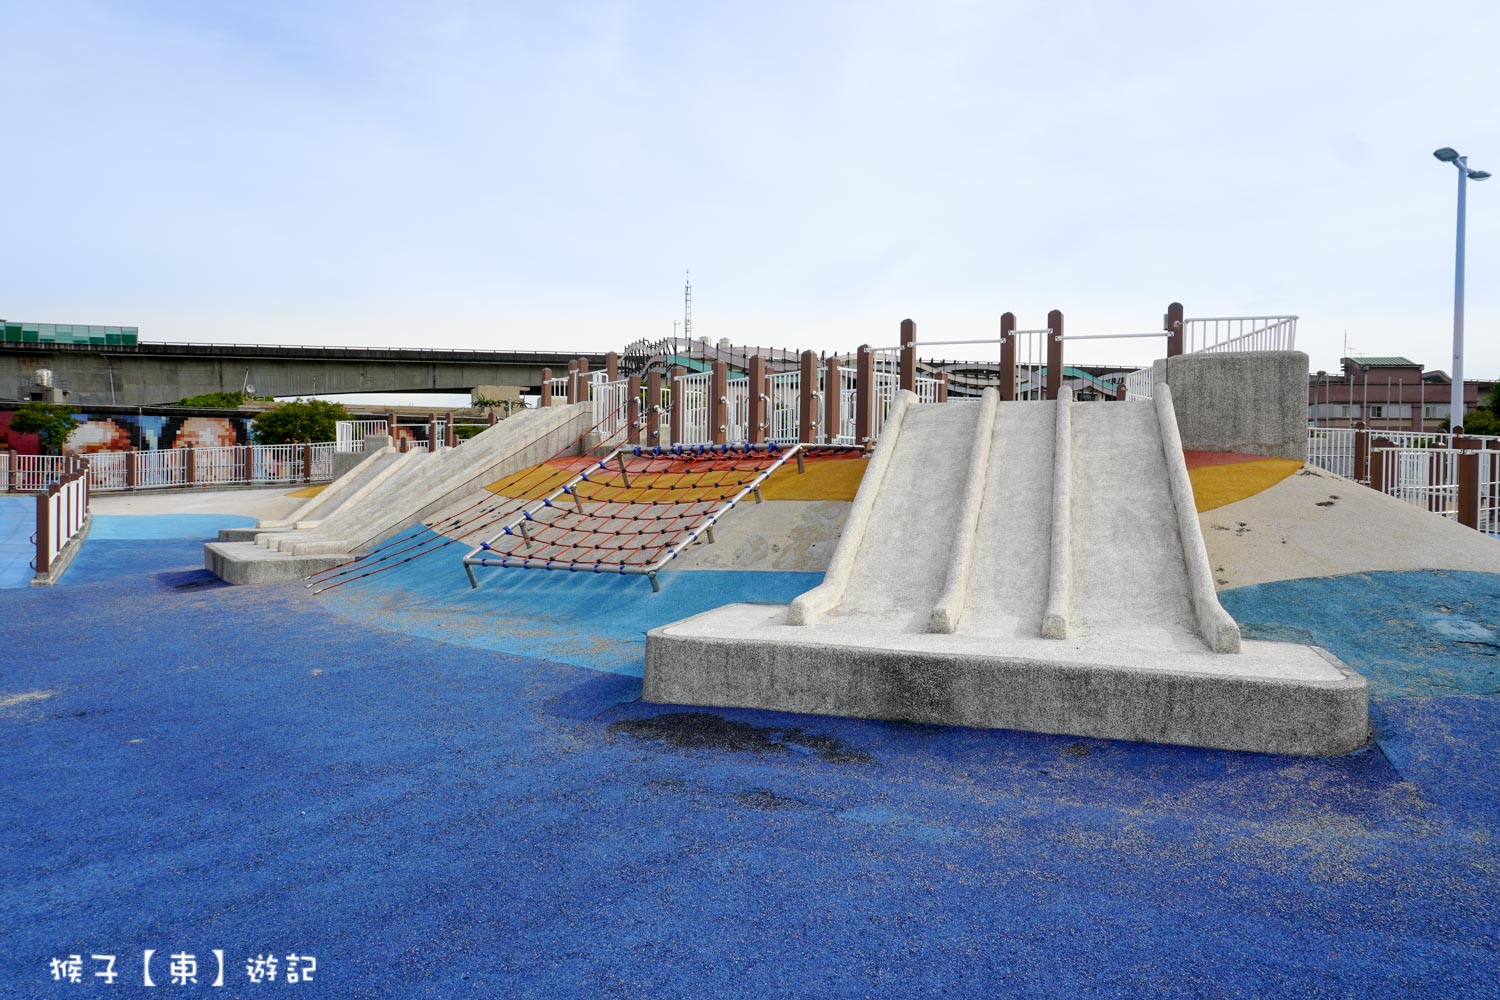 延伸閱讀：[台北] 大佳河濱公園海洋遊戲場 免費放電小孩景點 沙坑 溜滑梯 滑索超多設施